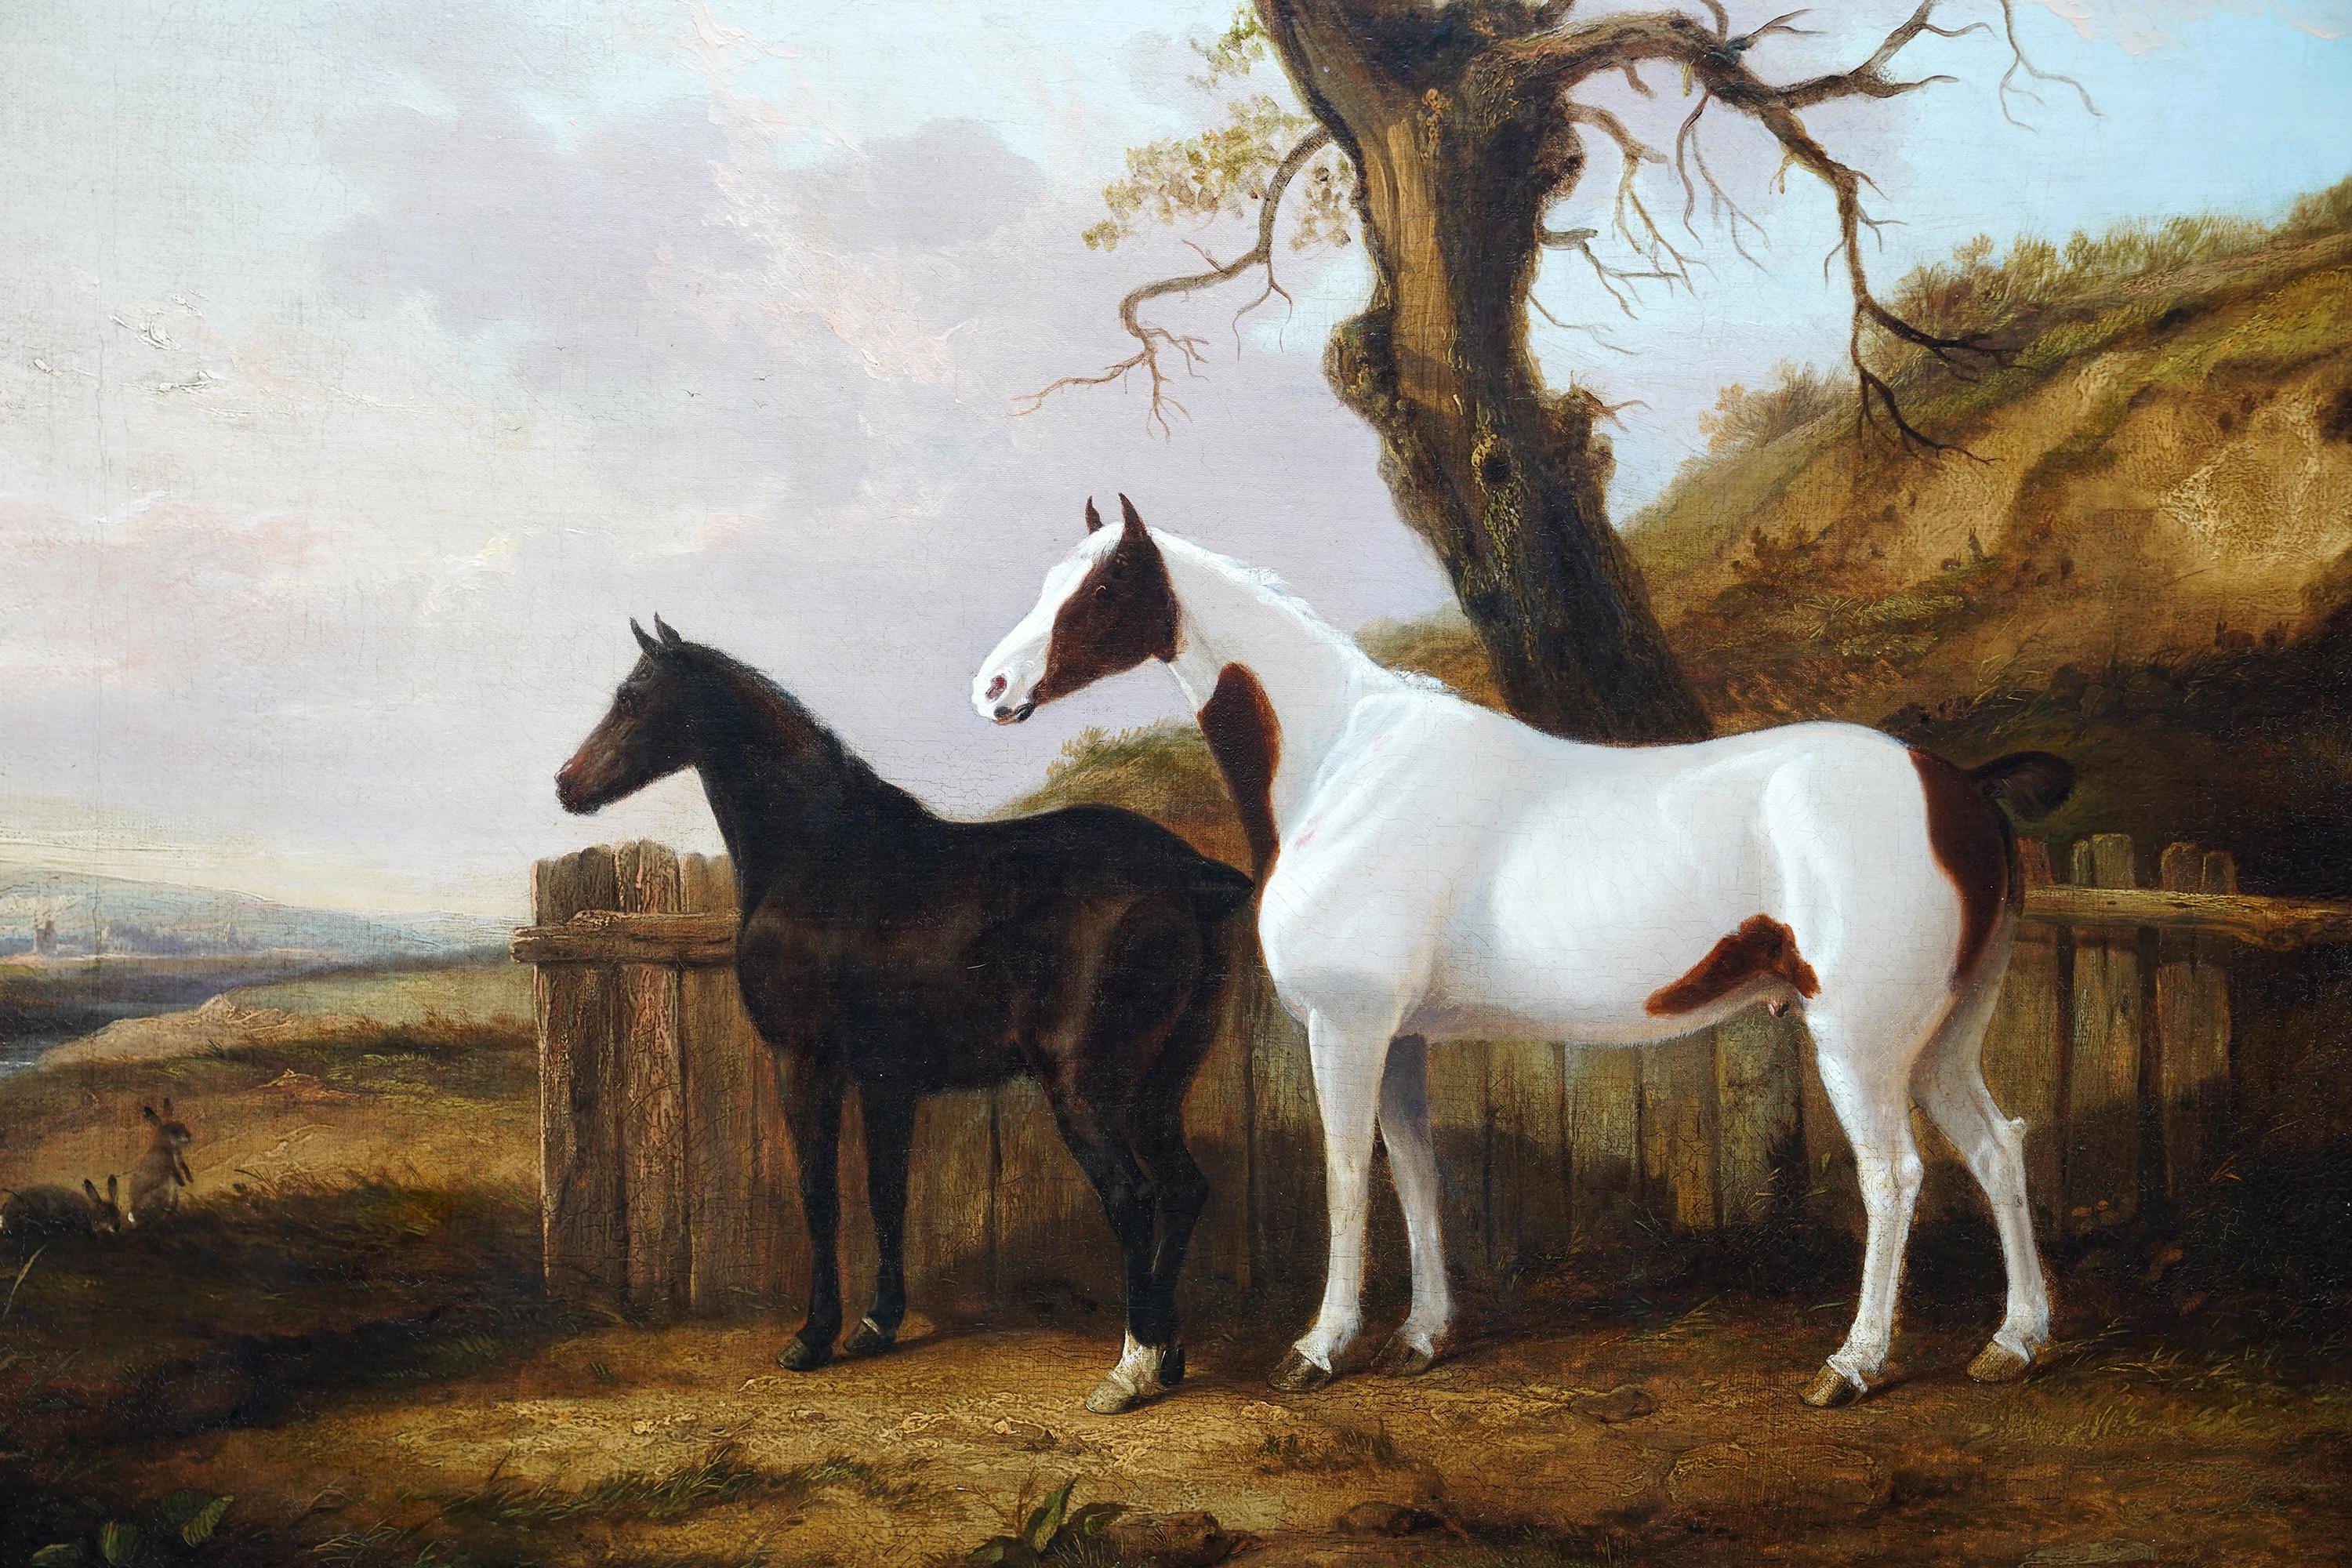 Portrait de deux chevaux dans un paysage - Peinture à l'huile d'art équestre britannique du 19e siècle - Victorien Painting par George Cole